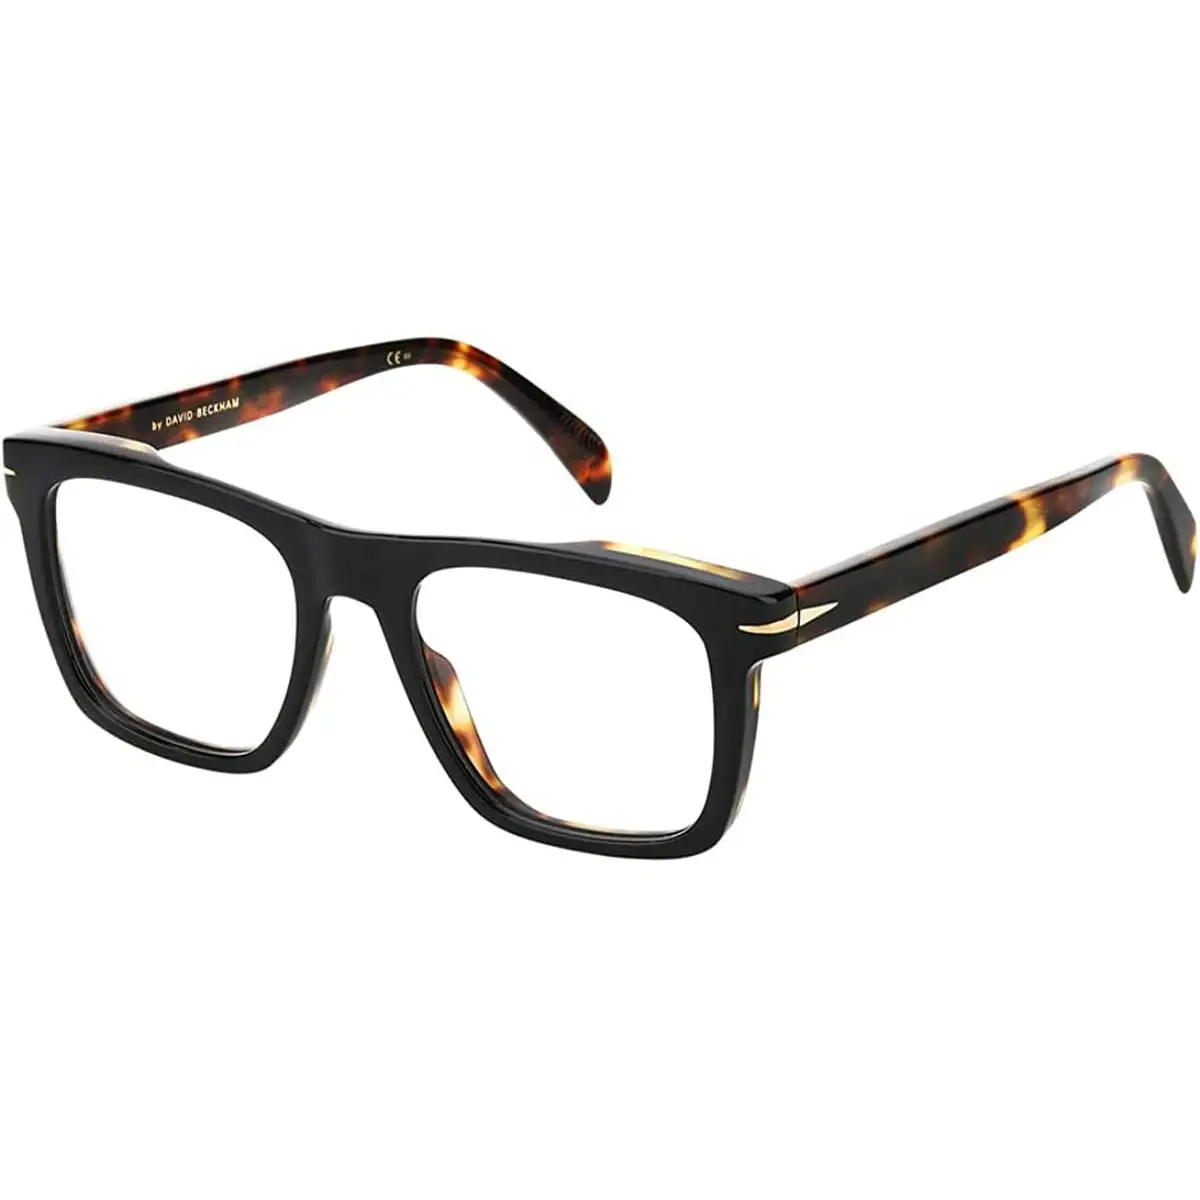 Monture de lunettes homme david beckham db 7020_2407. DIAYTAR SENEGAL - Votre Destination Shopping de Confiance. Naviguez à travers notre boutique en ligne et profitez d'une sélection soigneusement choisie de produits qui répondent à toutes vos exigences.